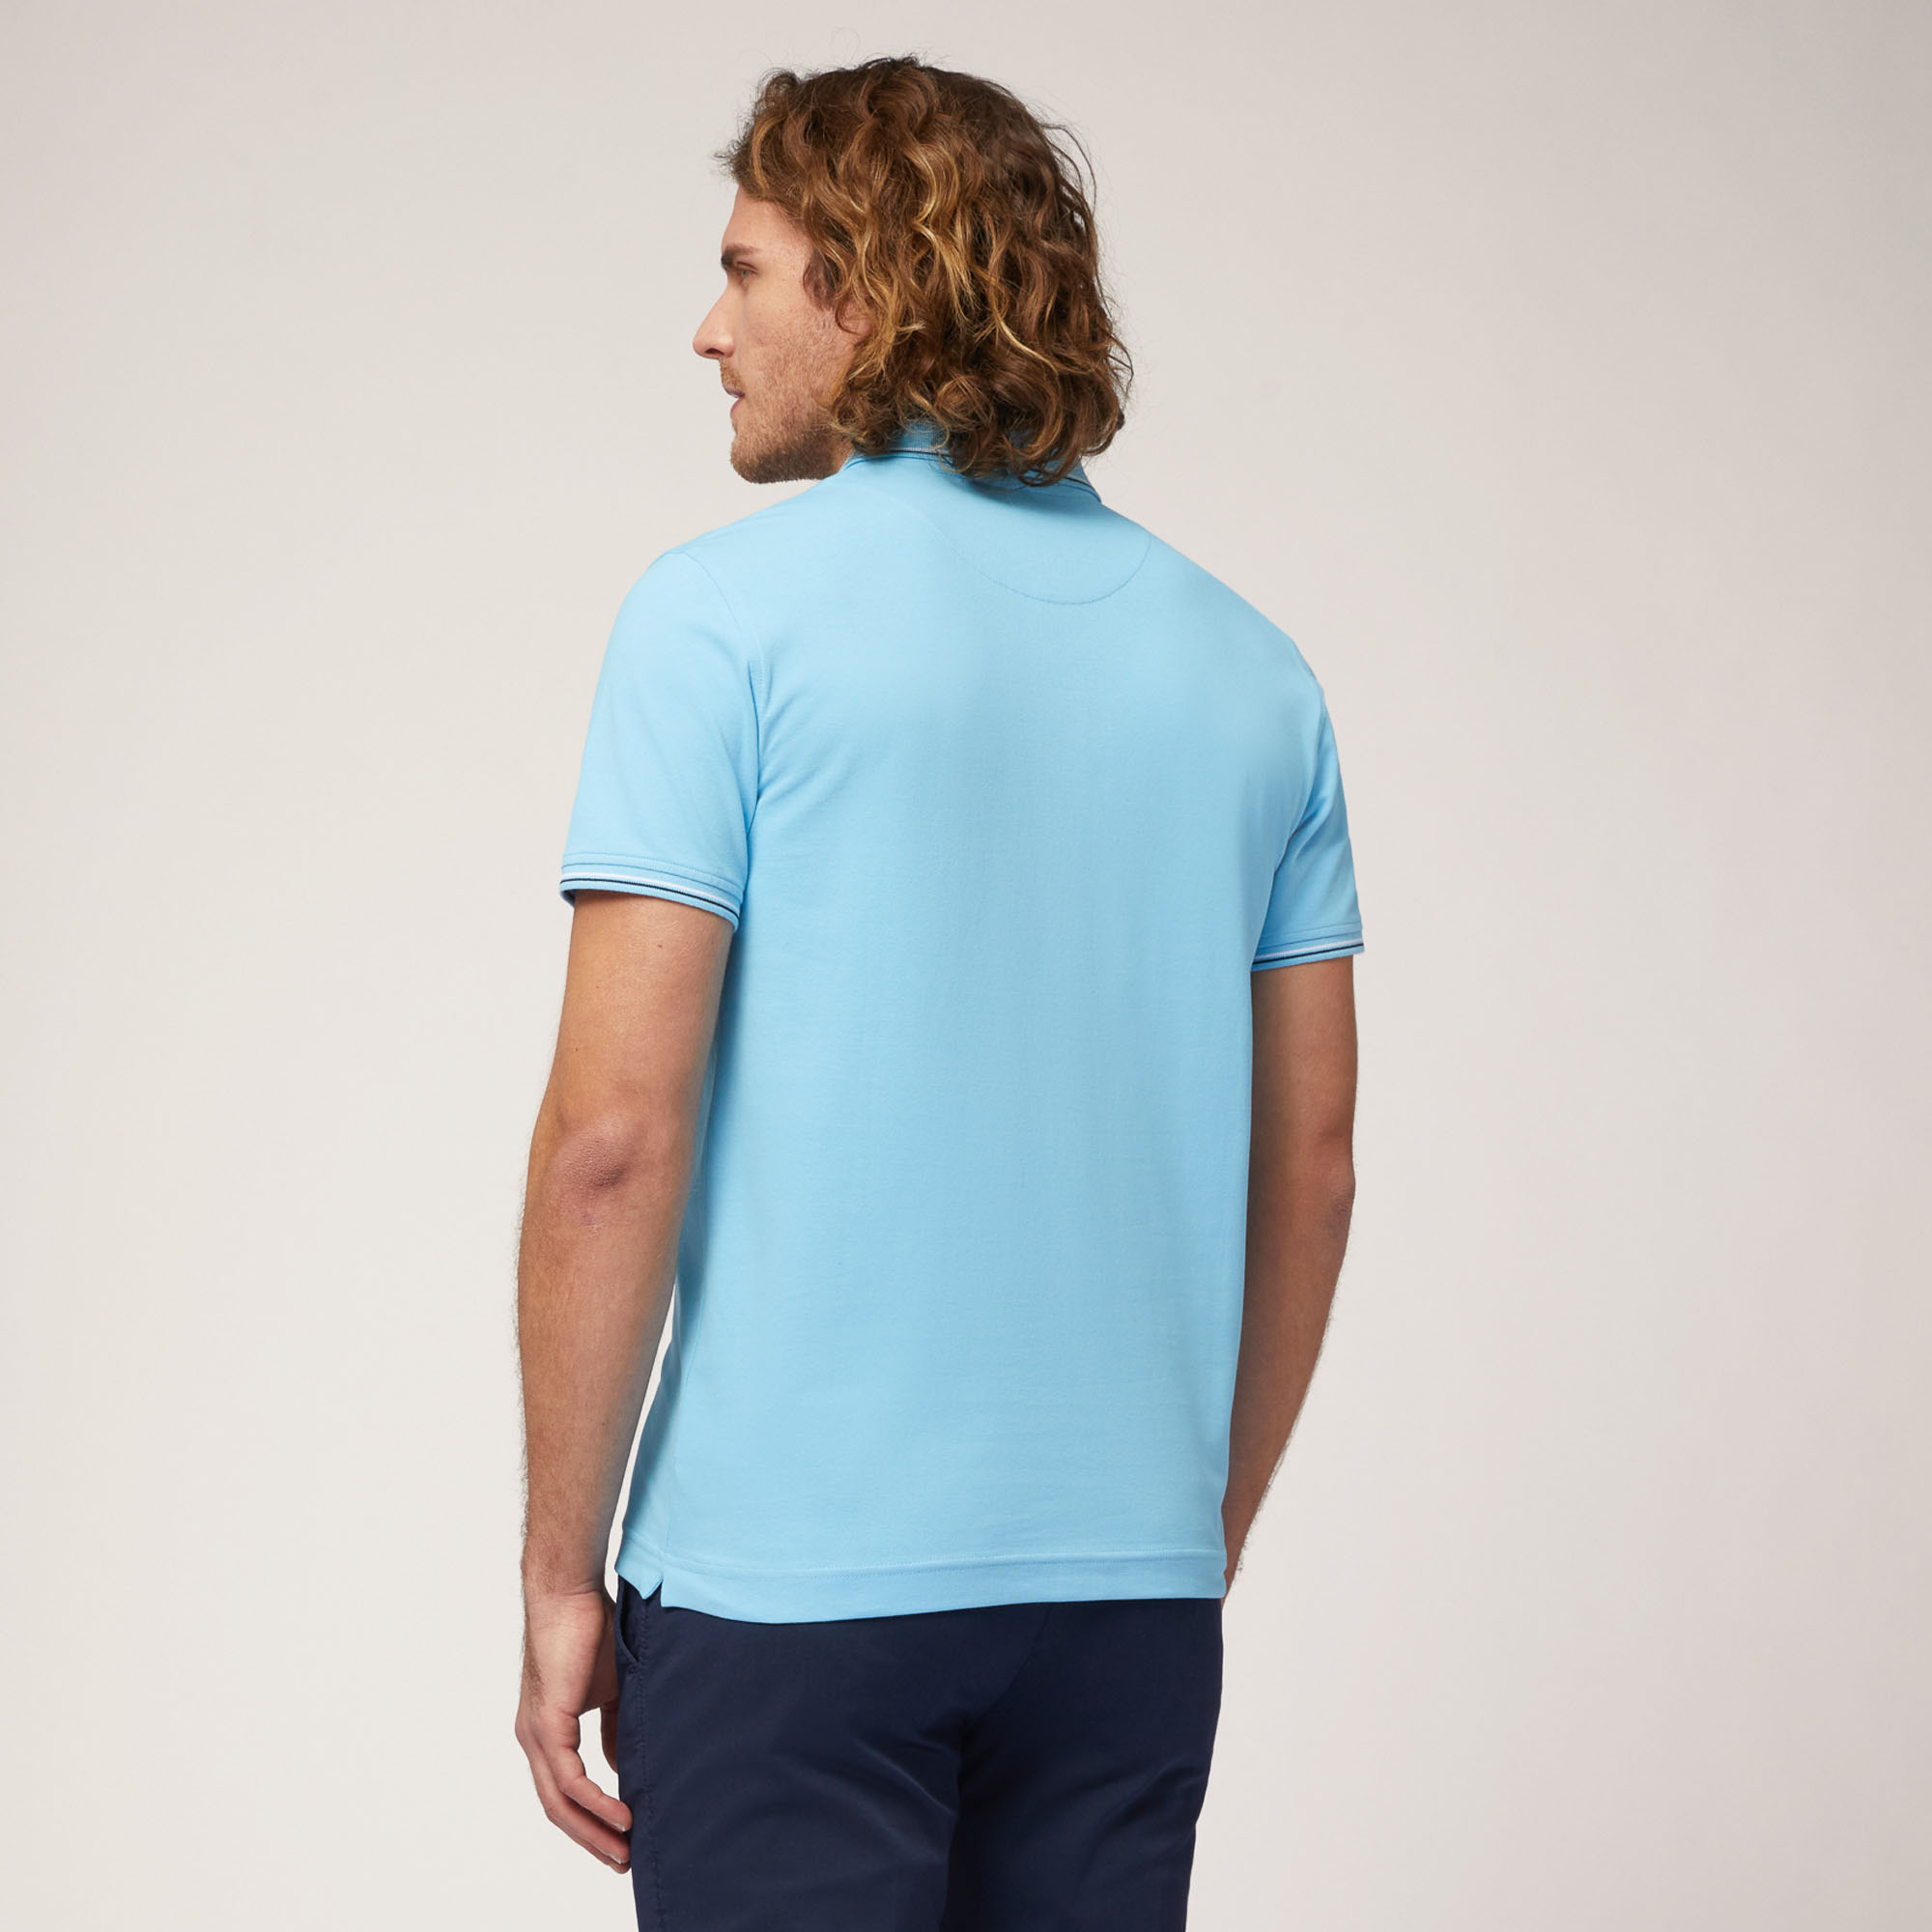 Poloshirt mit Streifen-Details, Kobaltblau, large image number 1